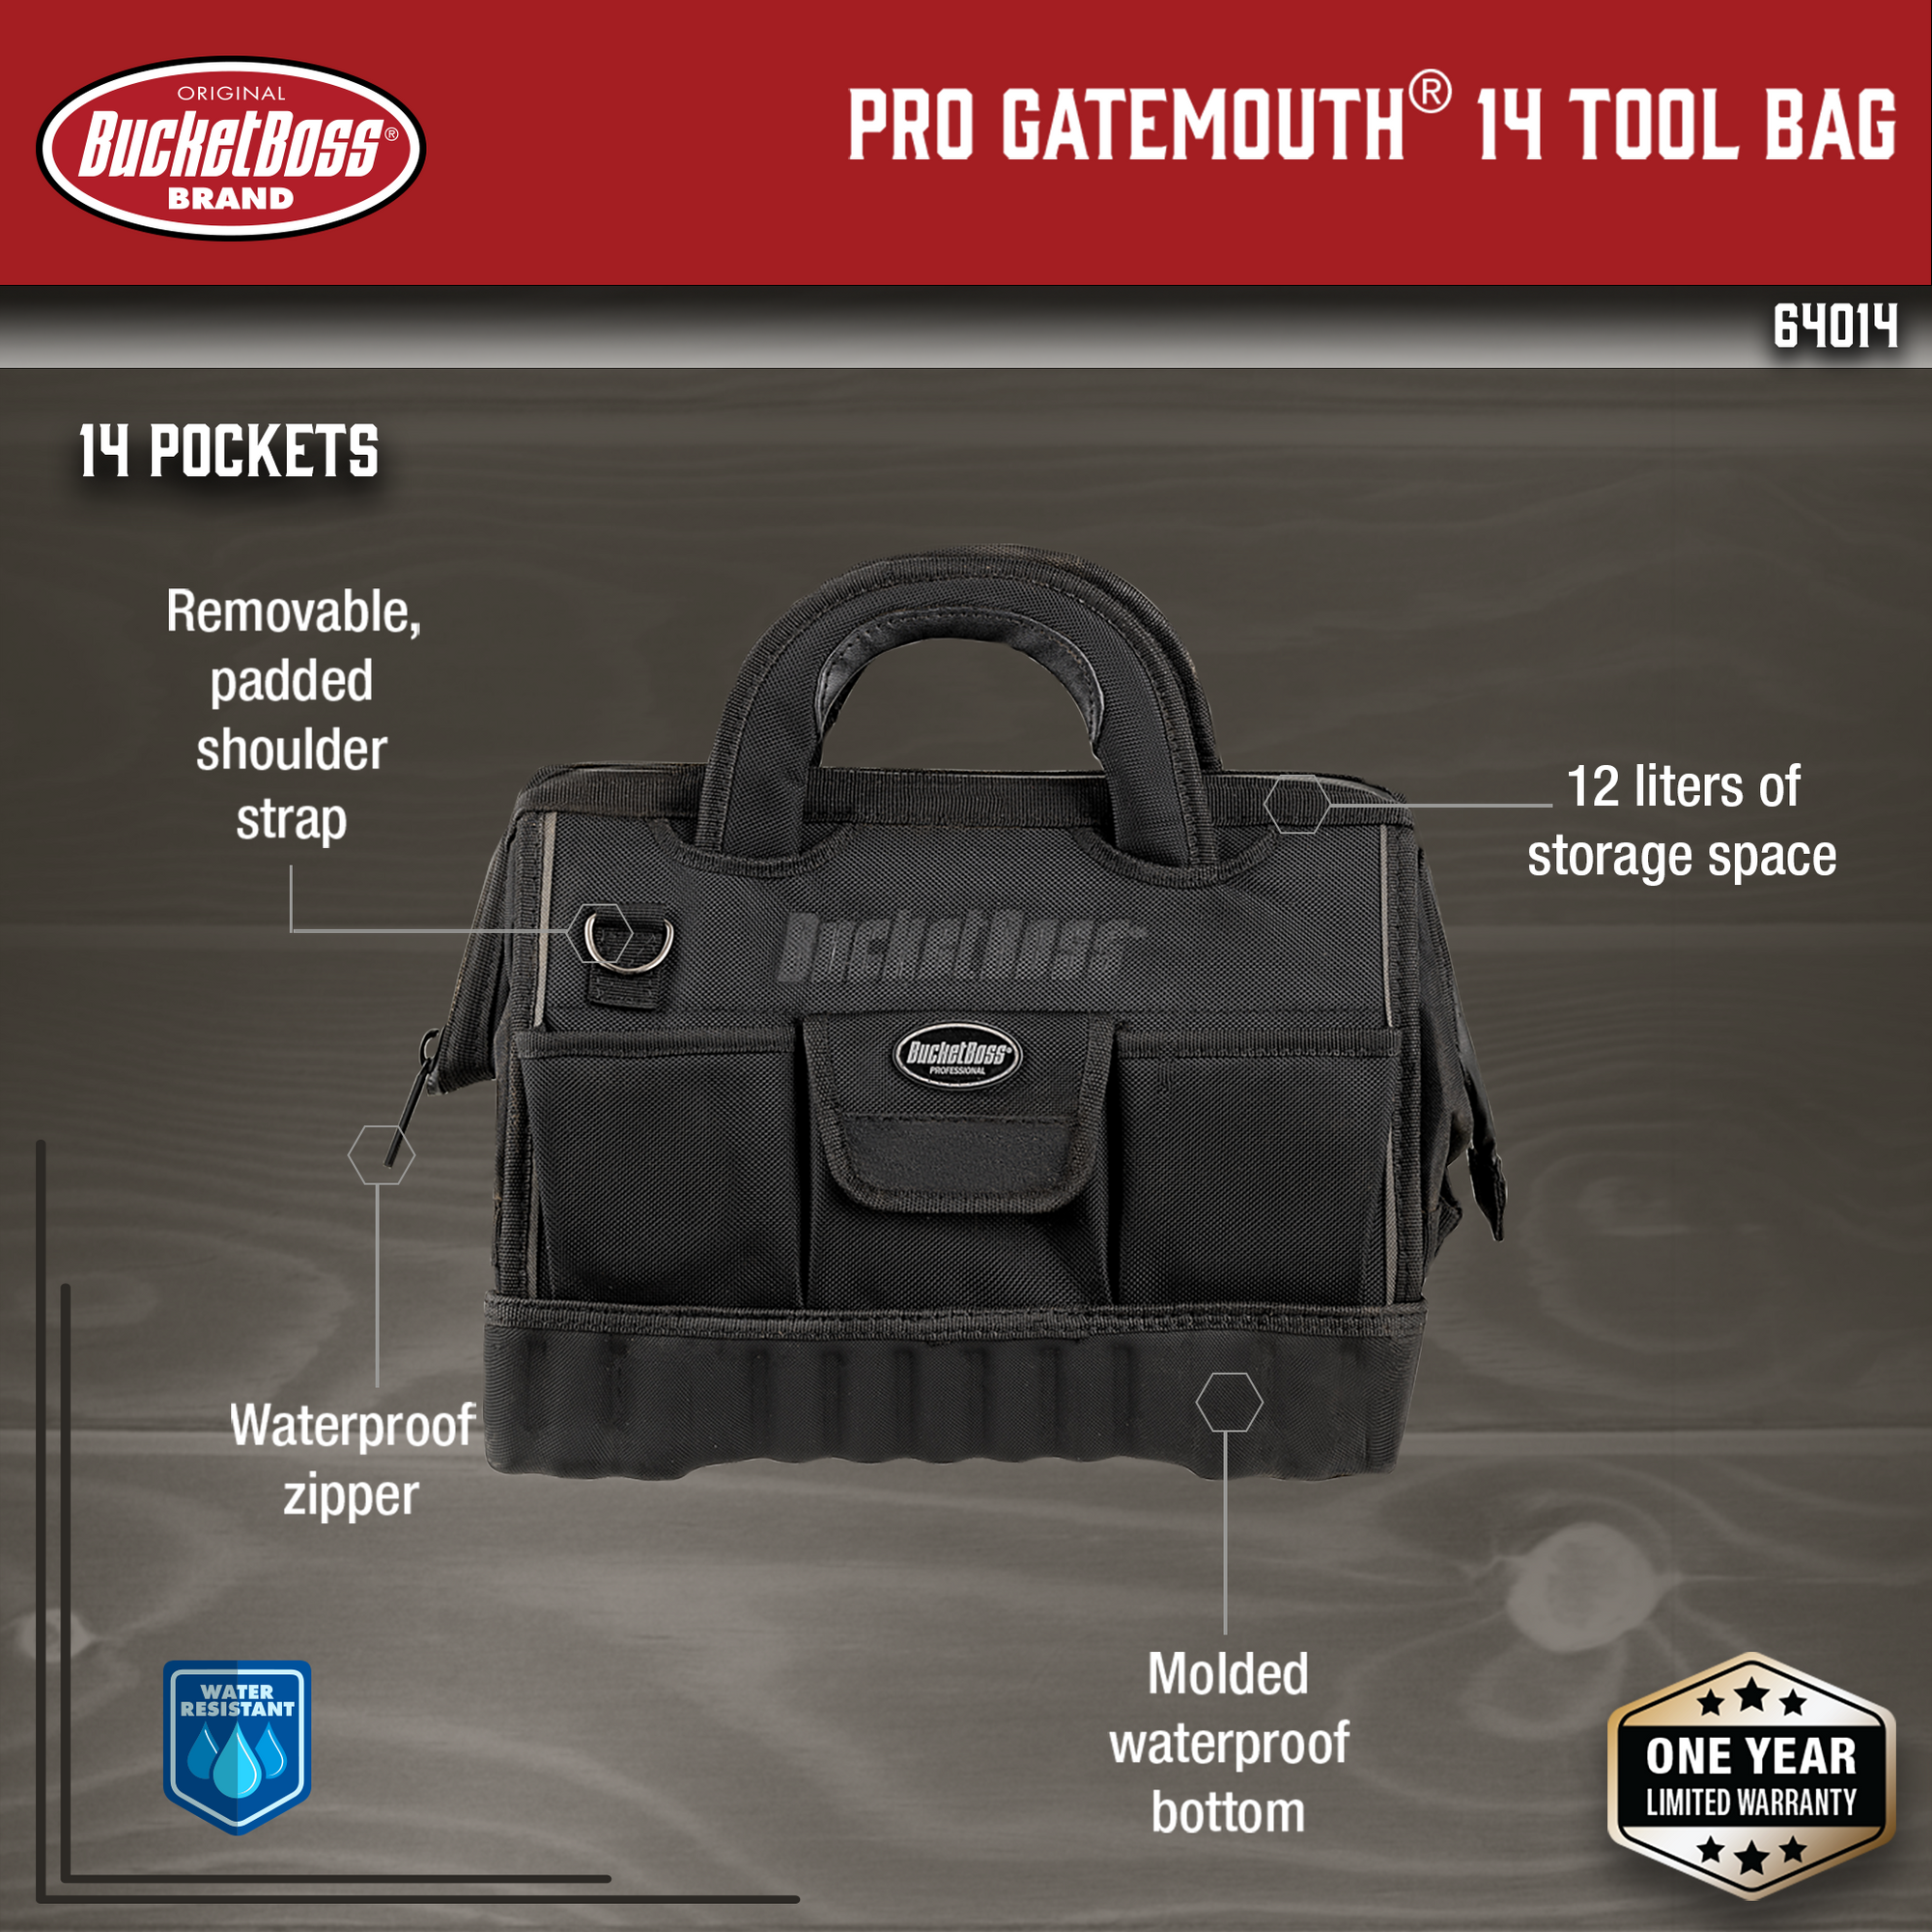 Pro Gatemouth 14 Tool Bag